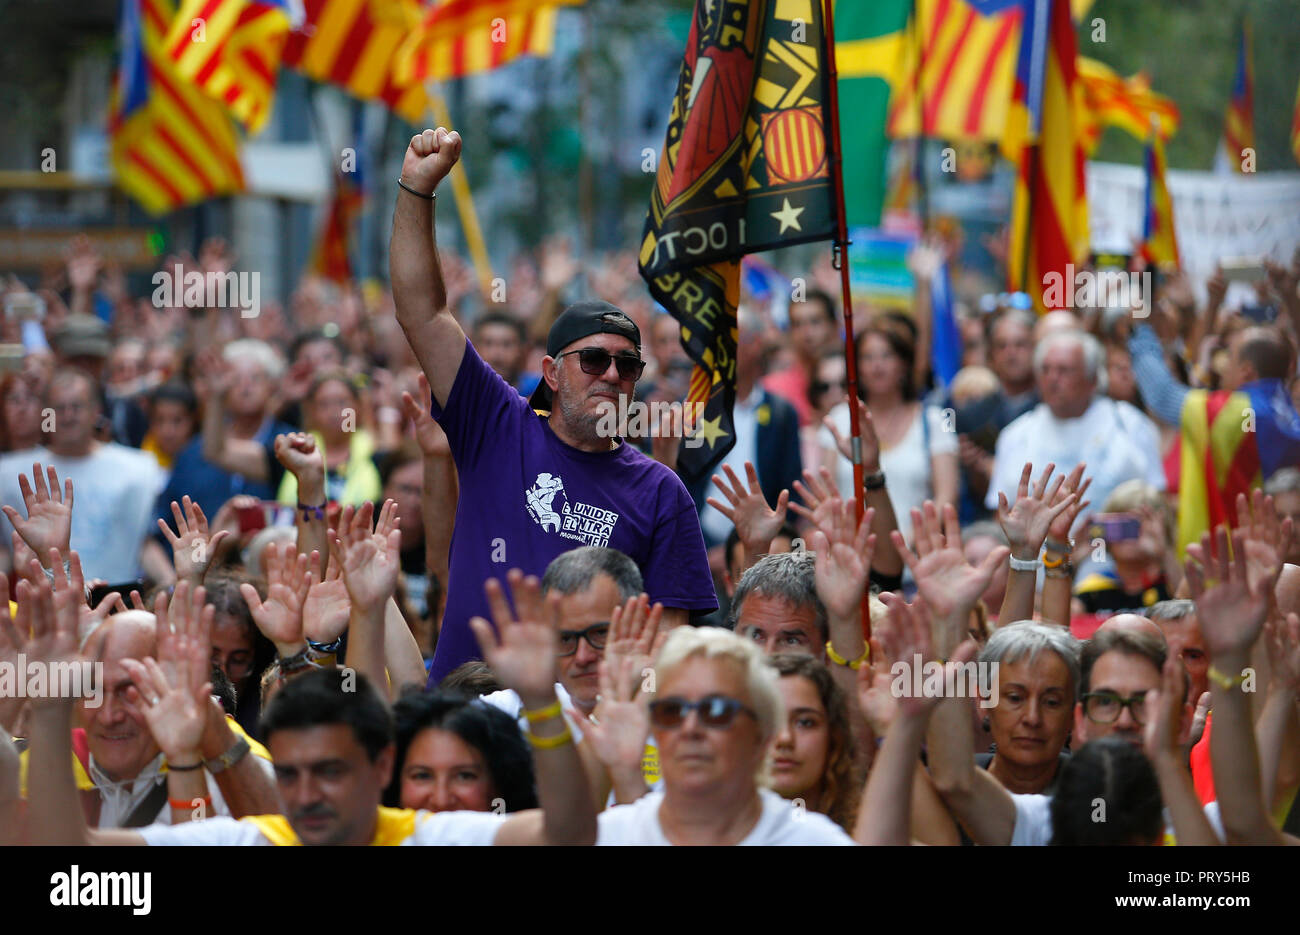 Las personas levantan sus manos y gritaron consignas mientras llevaba las boletas de votación utilizados el año pasado prohibió independendence referéndum en Cataluña Foto de stock